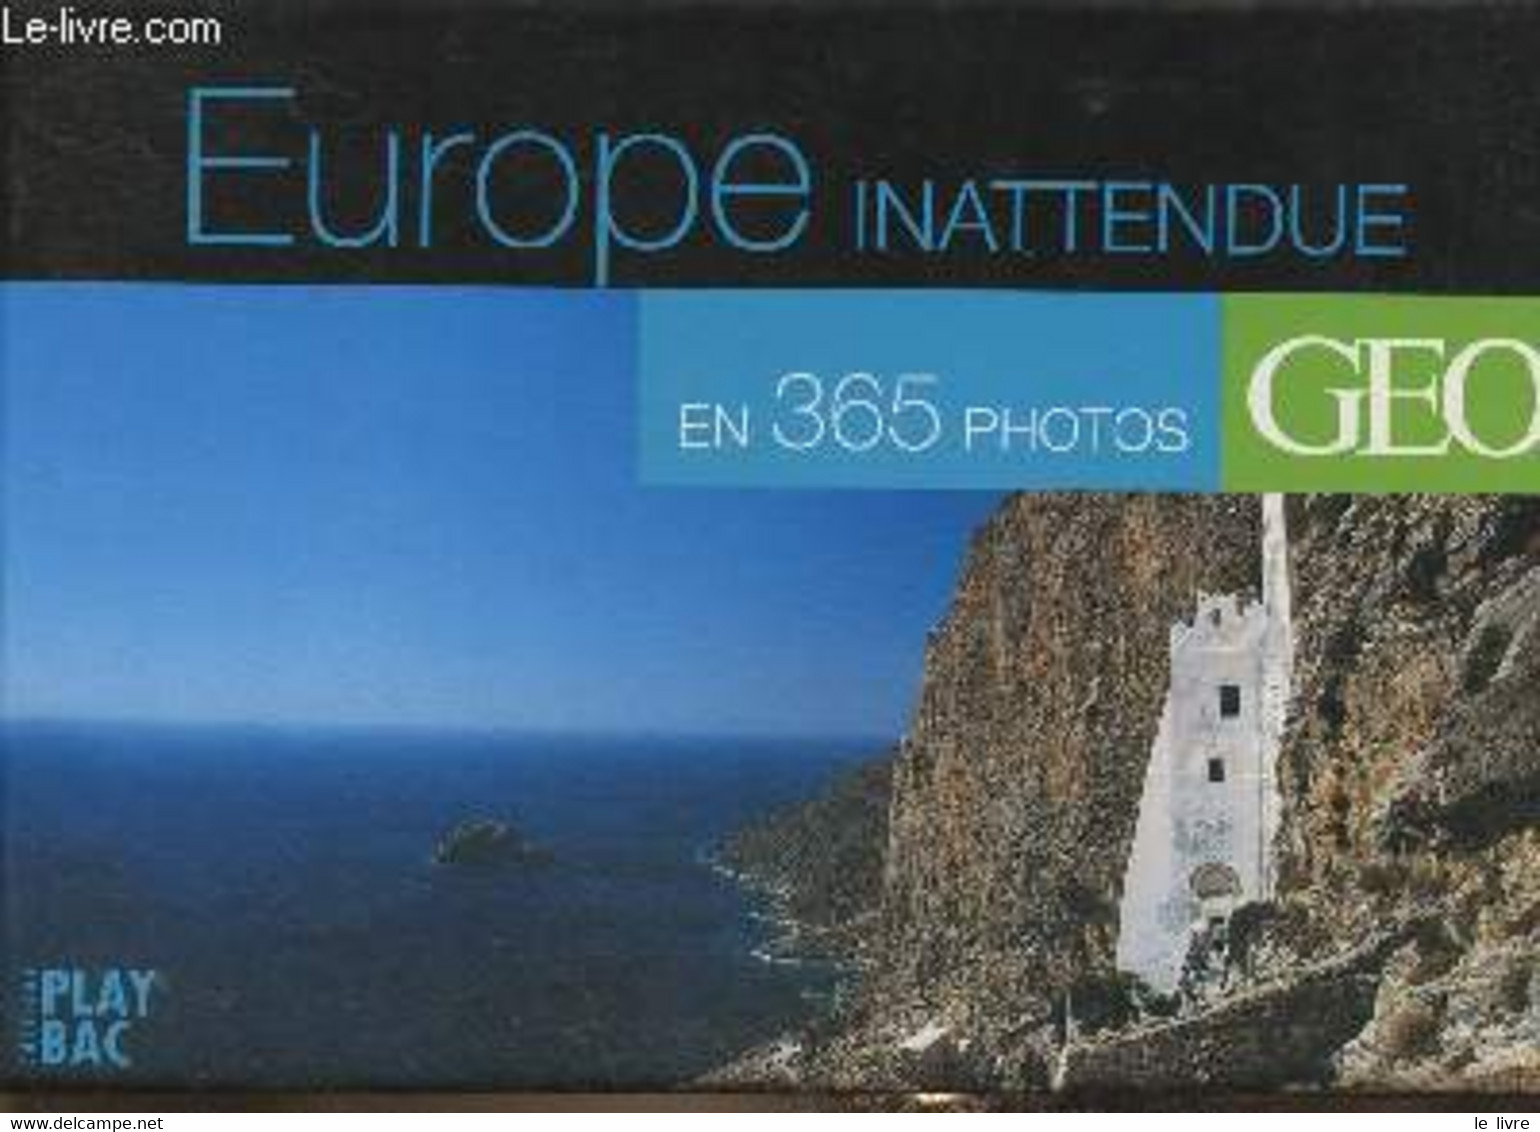 Europe Inattendue En 365 Photos - Collectif - 2007 - Agende & Calendari